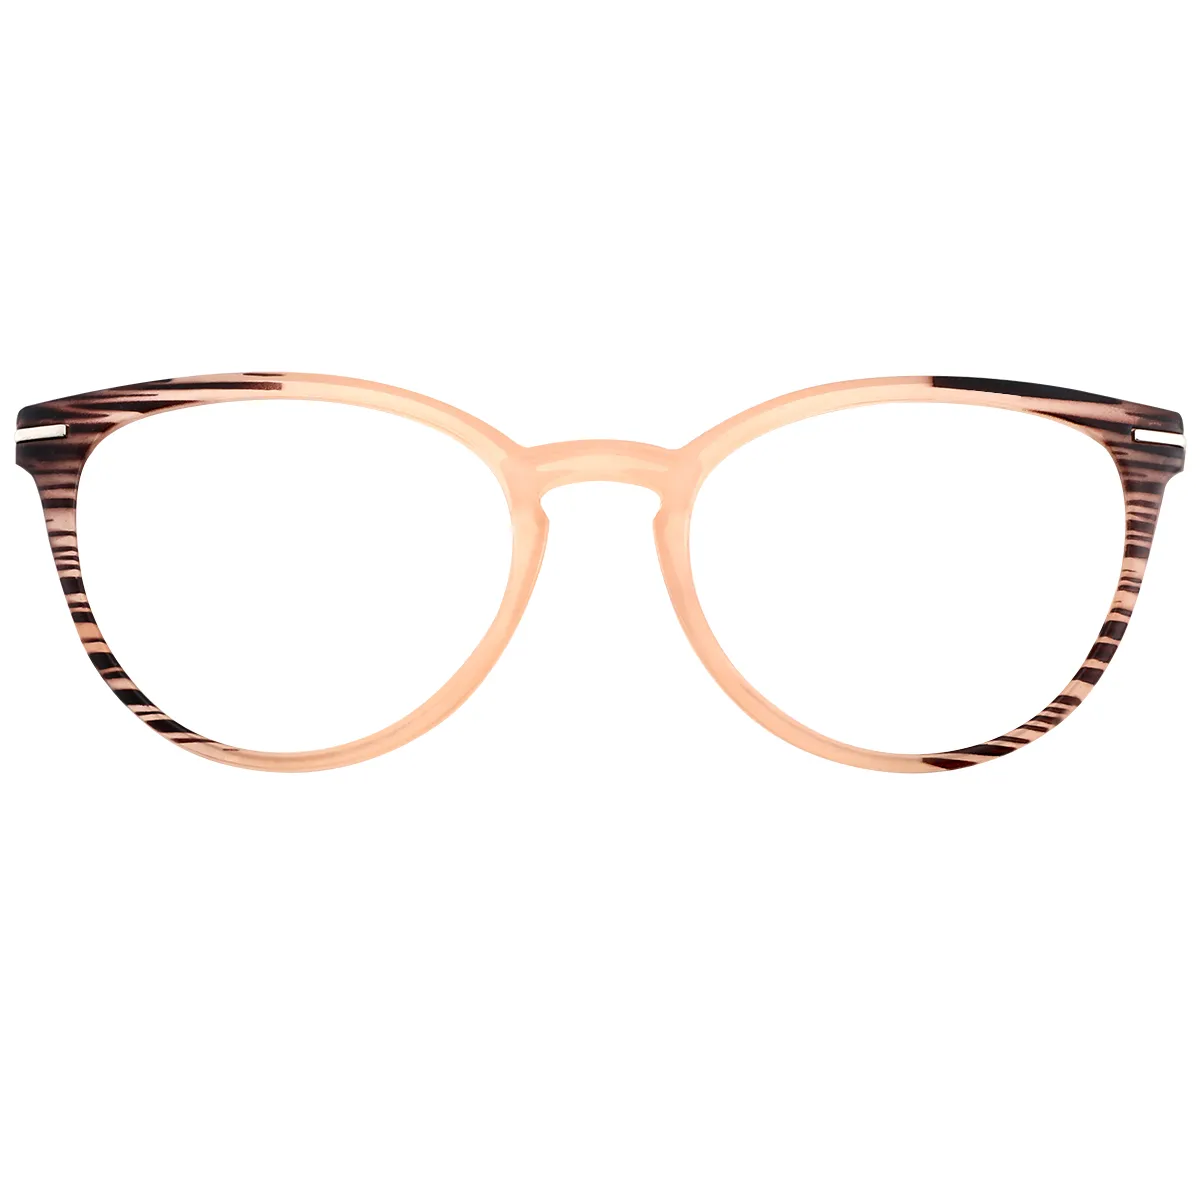 Fashion Cat-eye Light-pink  Reading Glasses for Women